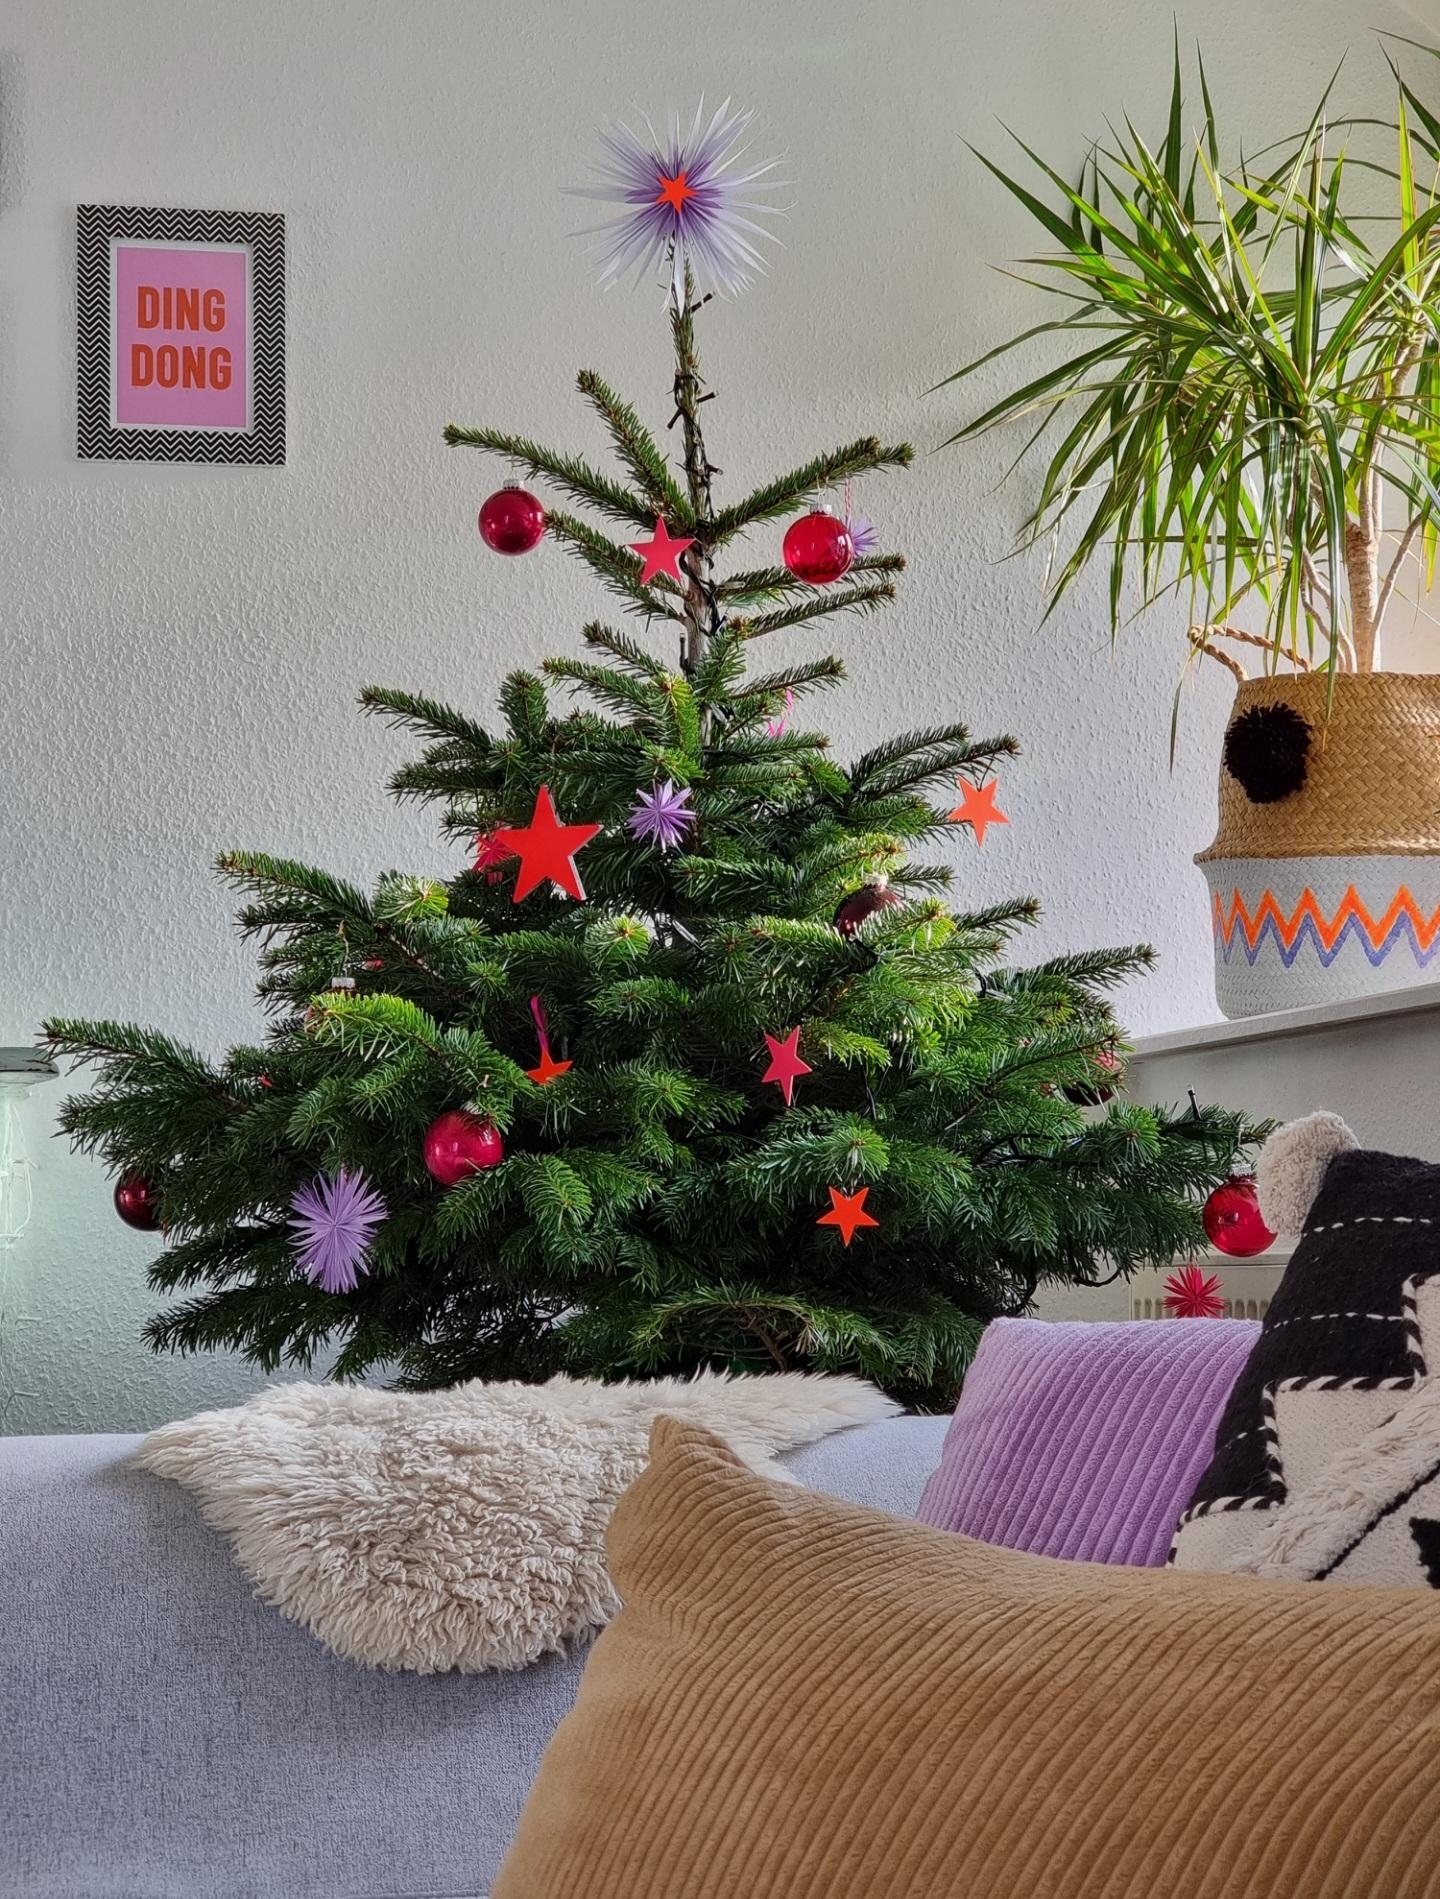 Der #Weihnachtsbaum steht 🎄 #Diy #Baumschmuck #Sterne in #Neon ➕️ #handmade #Baumspitze 🌟 #Weihnachtsdeko #cozy #Xmas #Colorfulchristmas #Weihnachten 